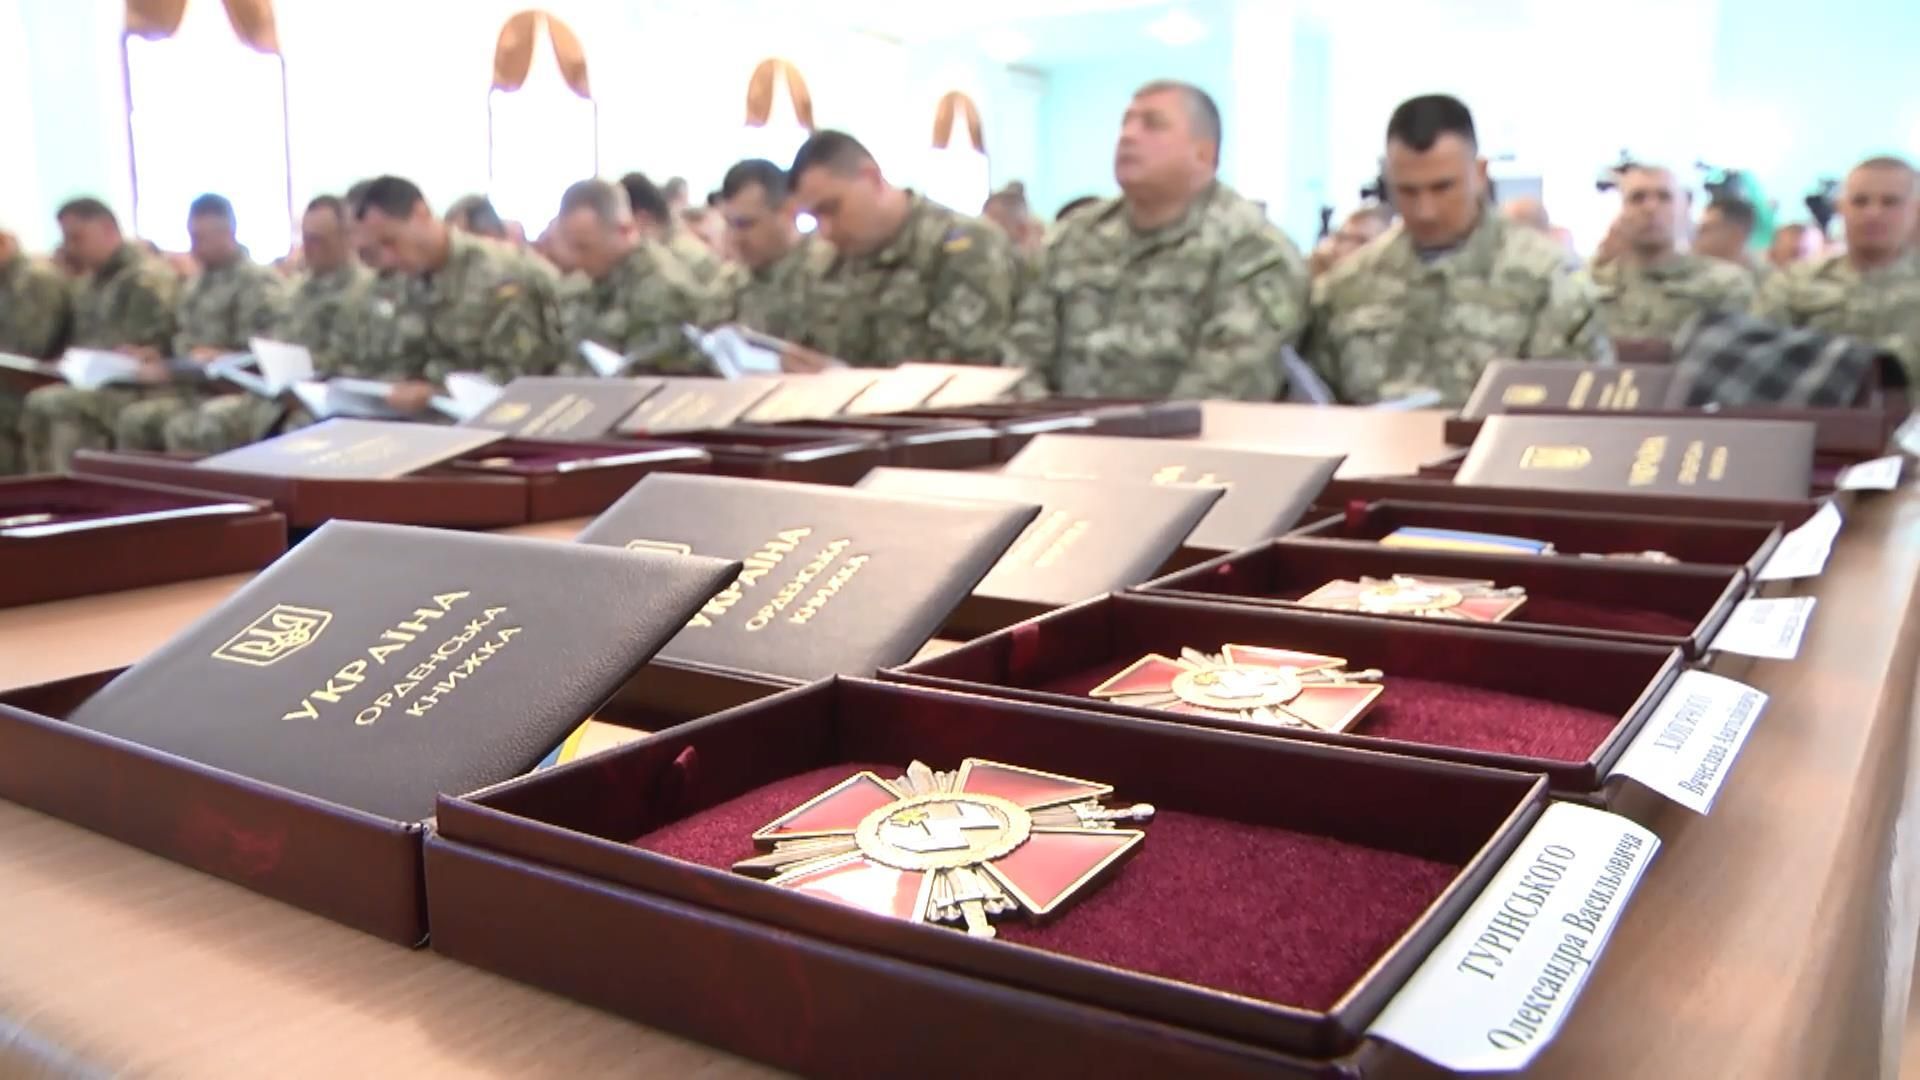 15 командирів отримали державні нагороди  до Дня захисника України 